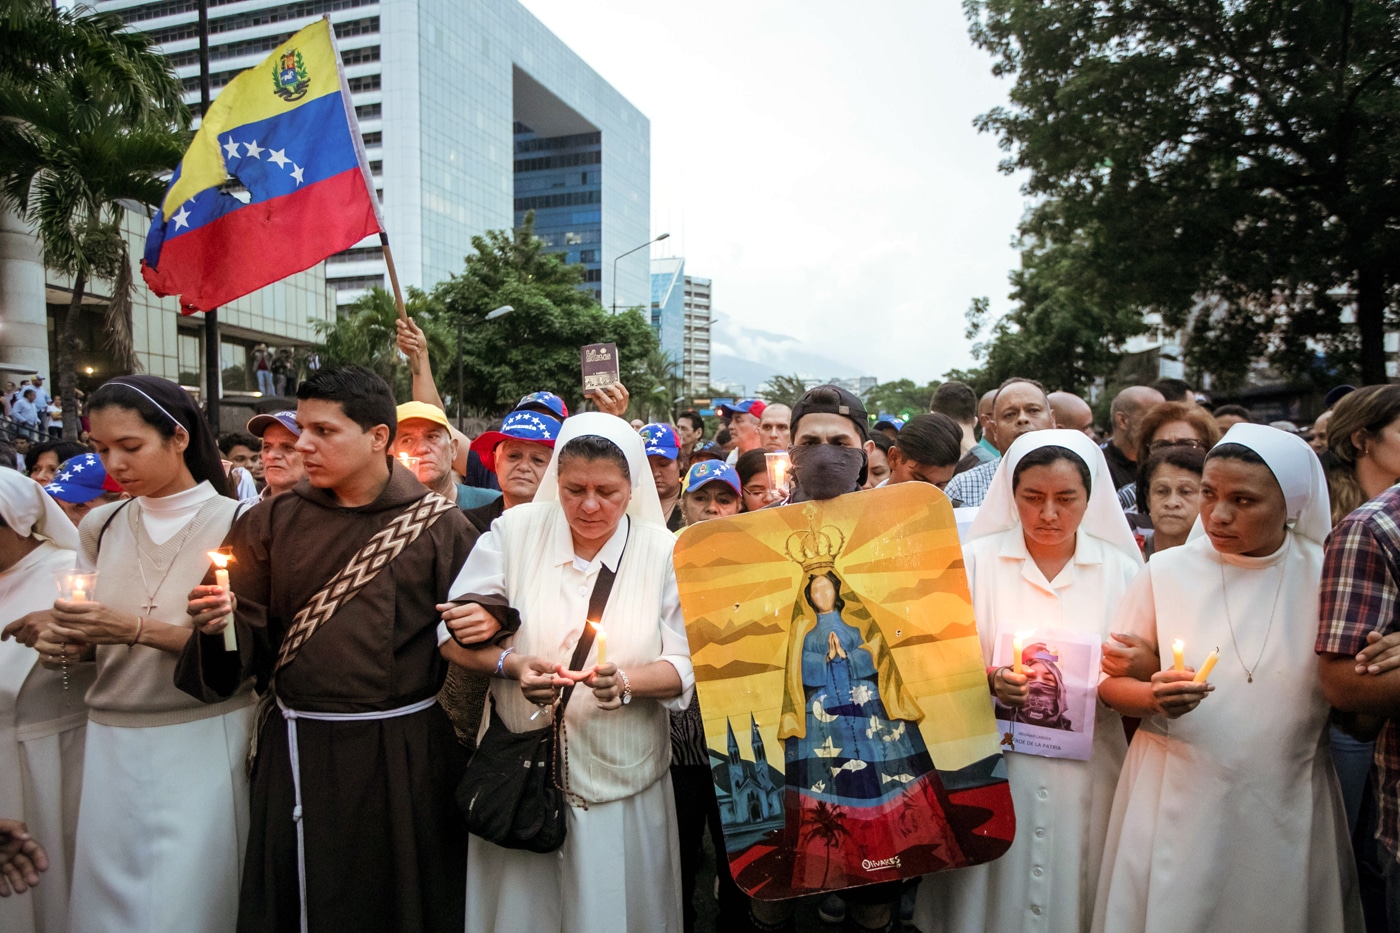 “La Iglesia en Venezuela requiere de ayuda urgente”